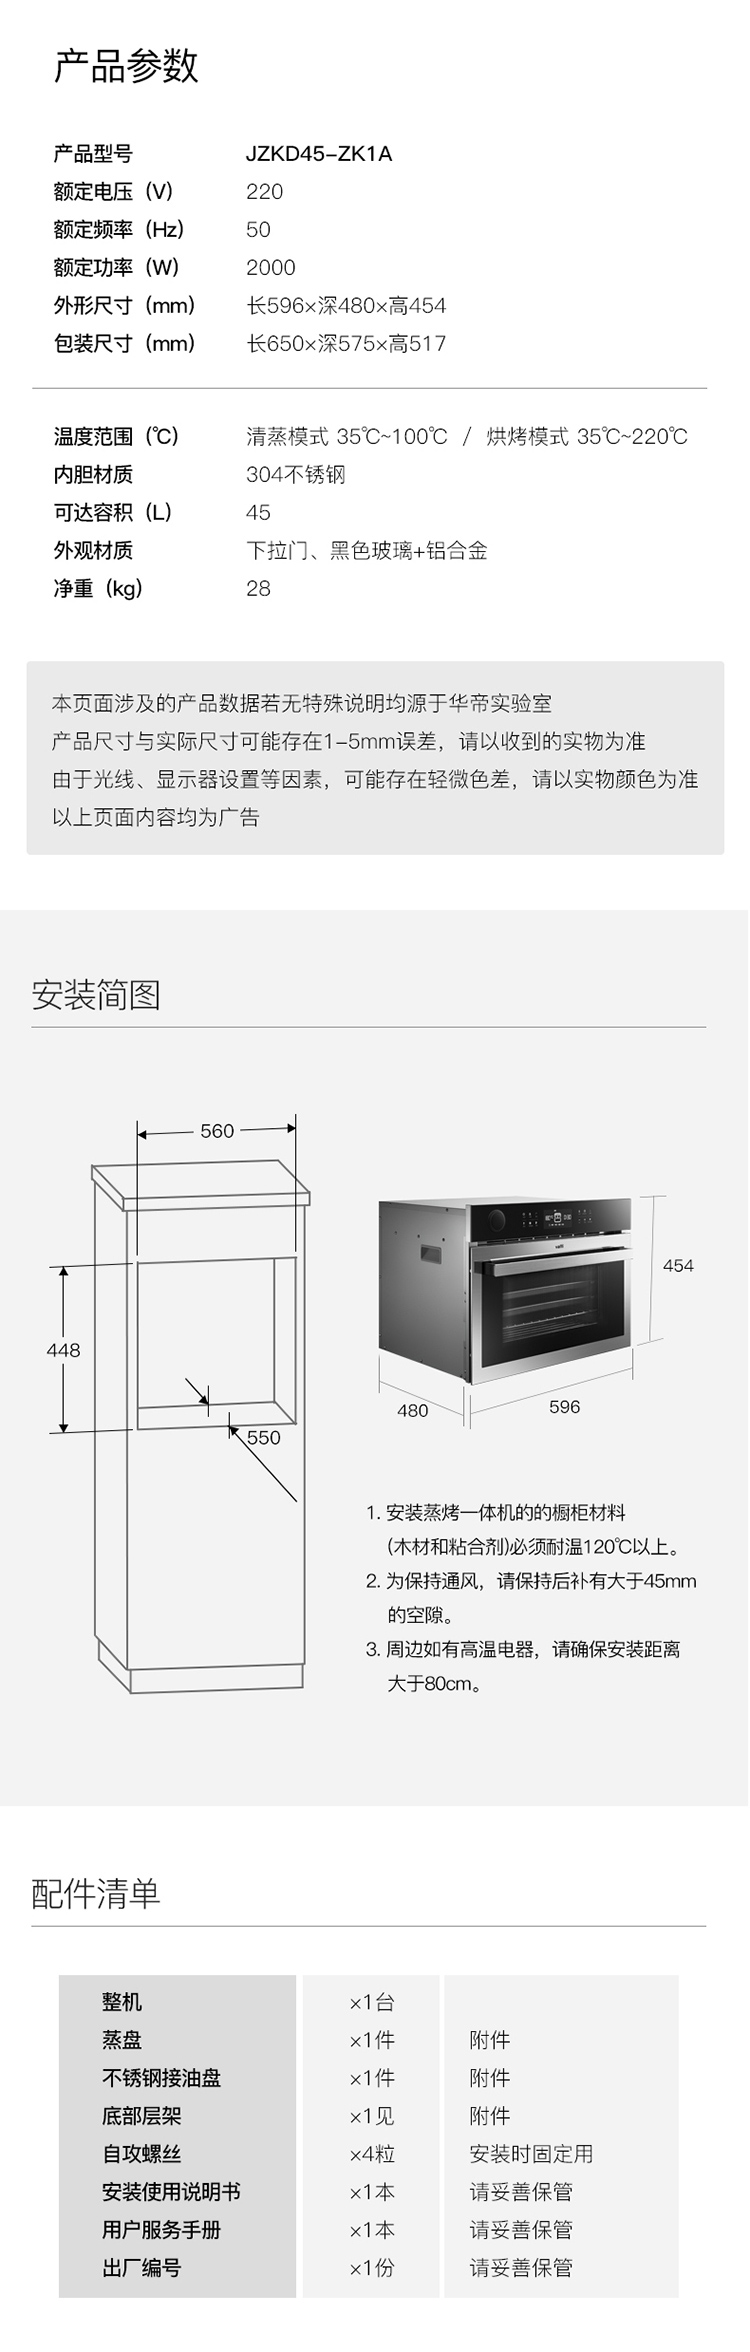 华帝(vatti)魔箱 45l大容量家用智能蒸烤一体机jzkd45-zk1a热风循环